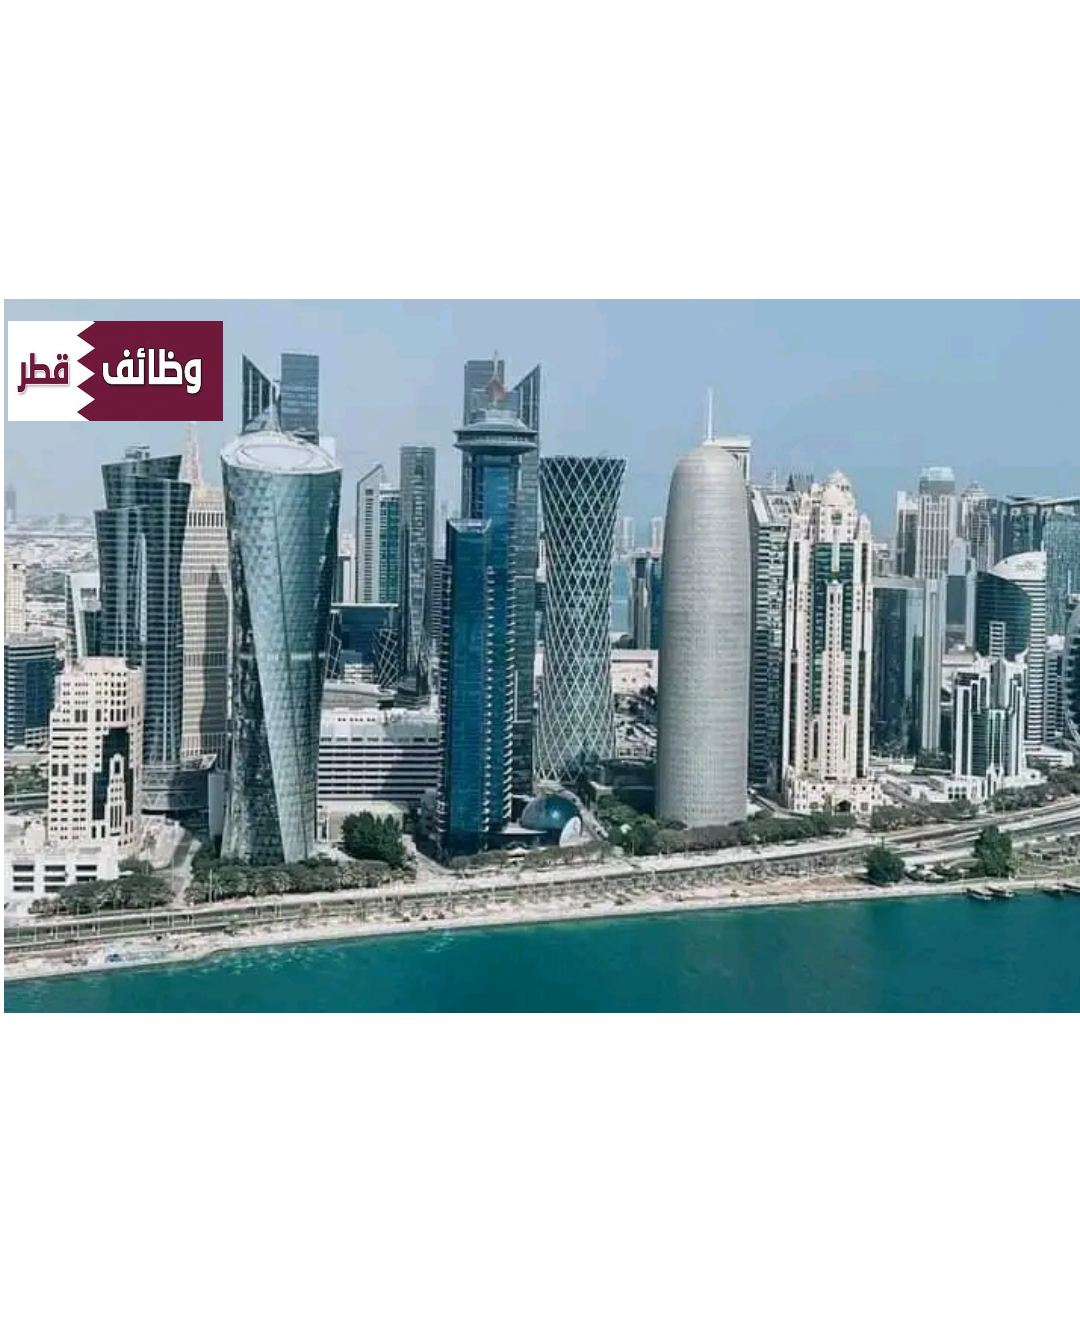 مطلوب 114 شخص للعمل في قطر لجميع المؤهلات وكافة الجنسيات .. تحديث يومي